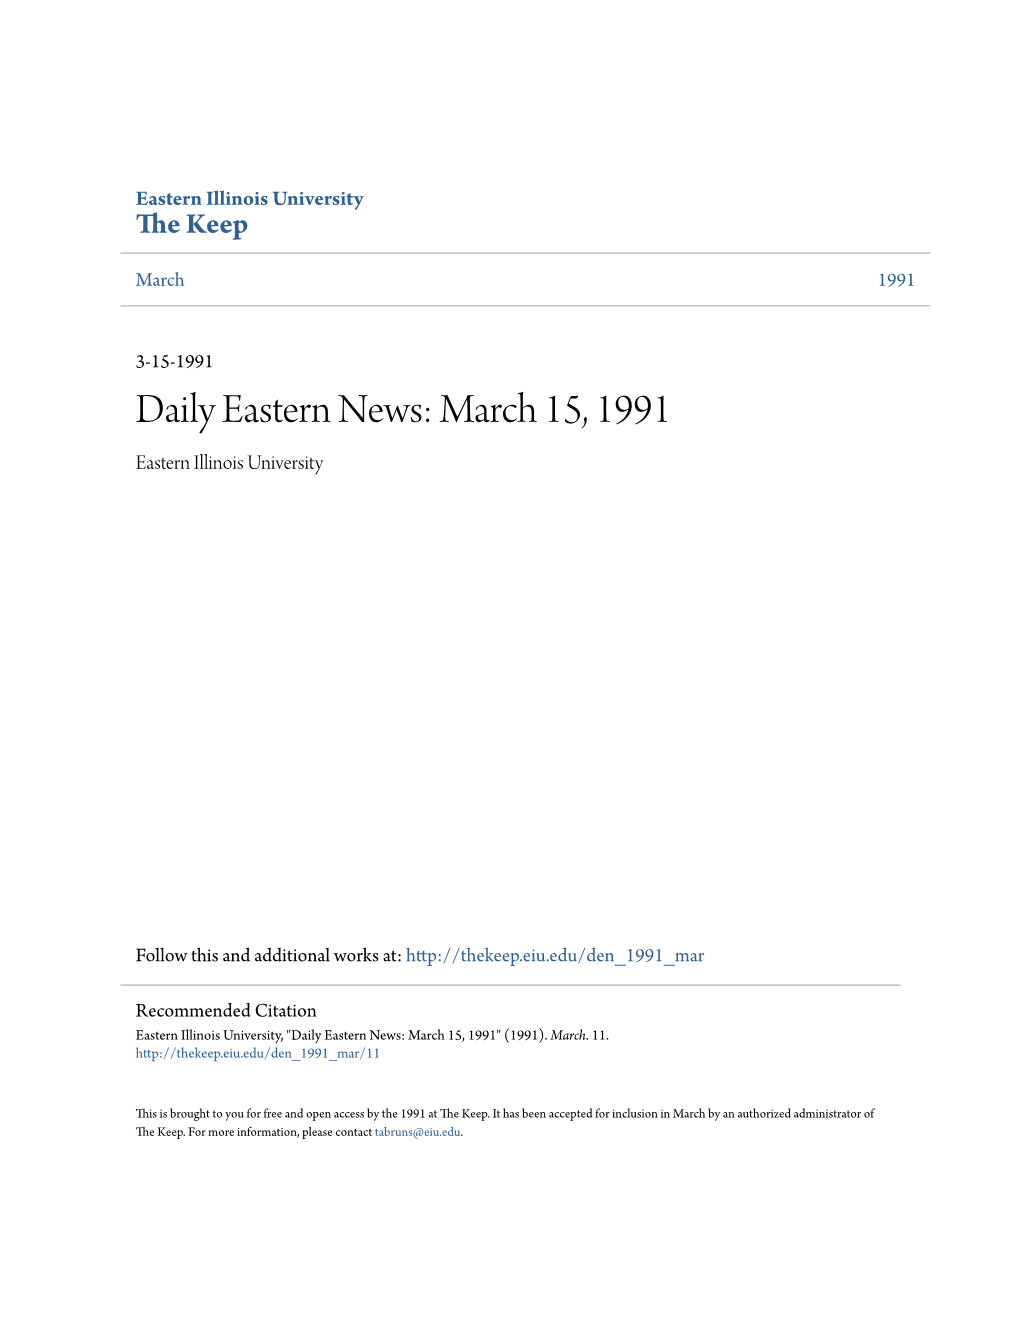 March 15, 1991 Eastern Illinois University